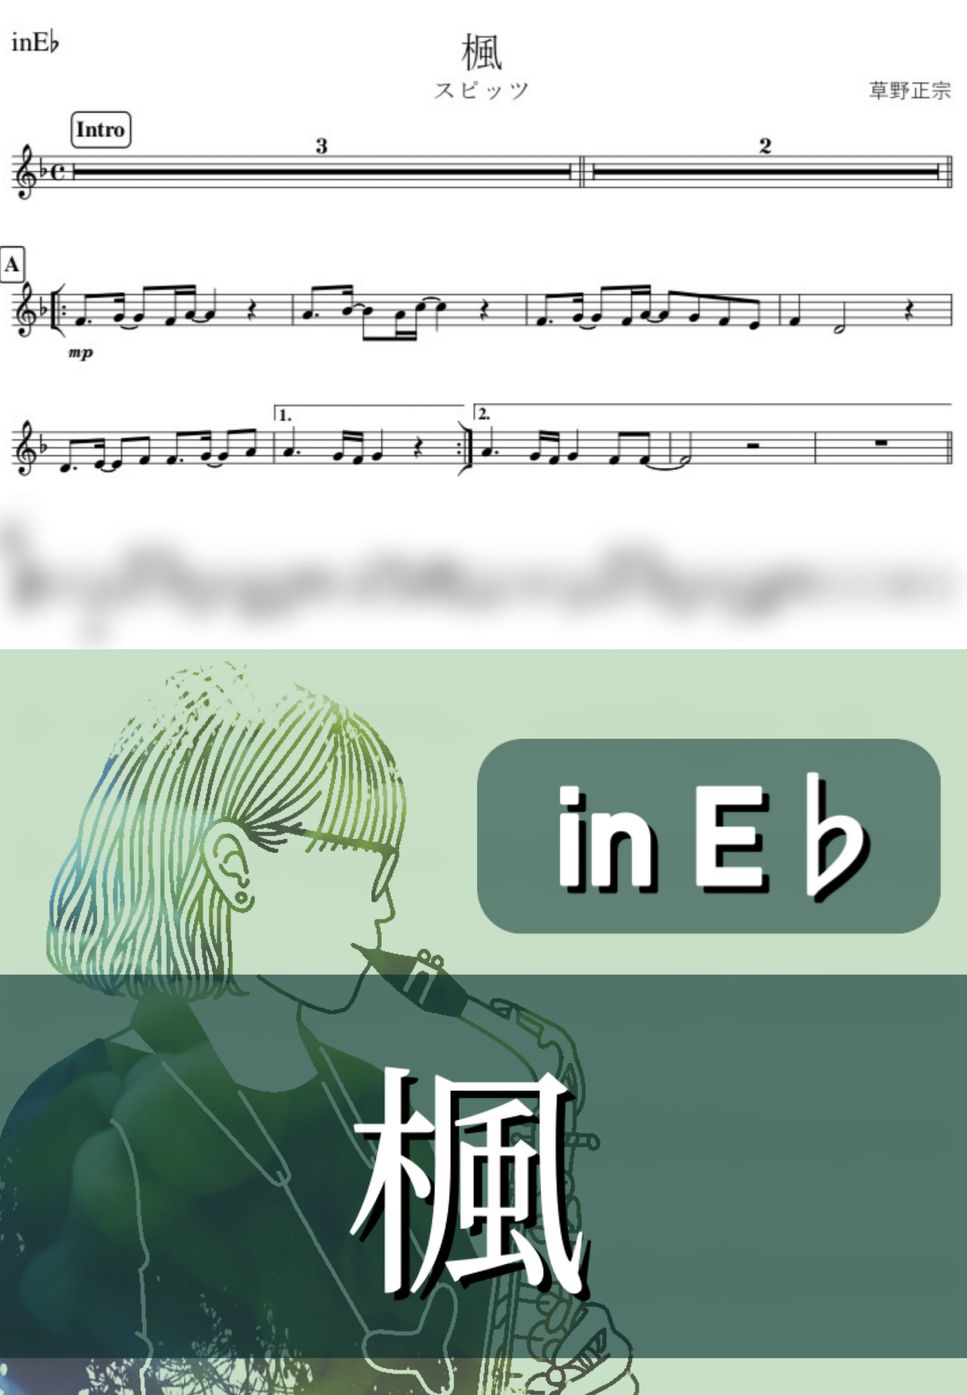 スピッツ - 楓 (E♭) by kanamusic